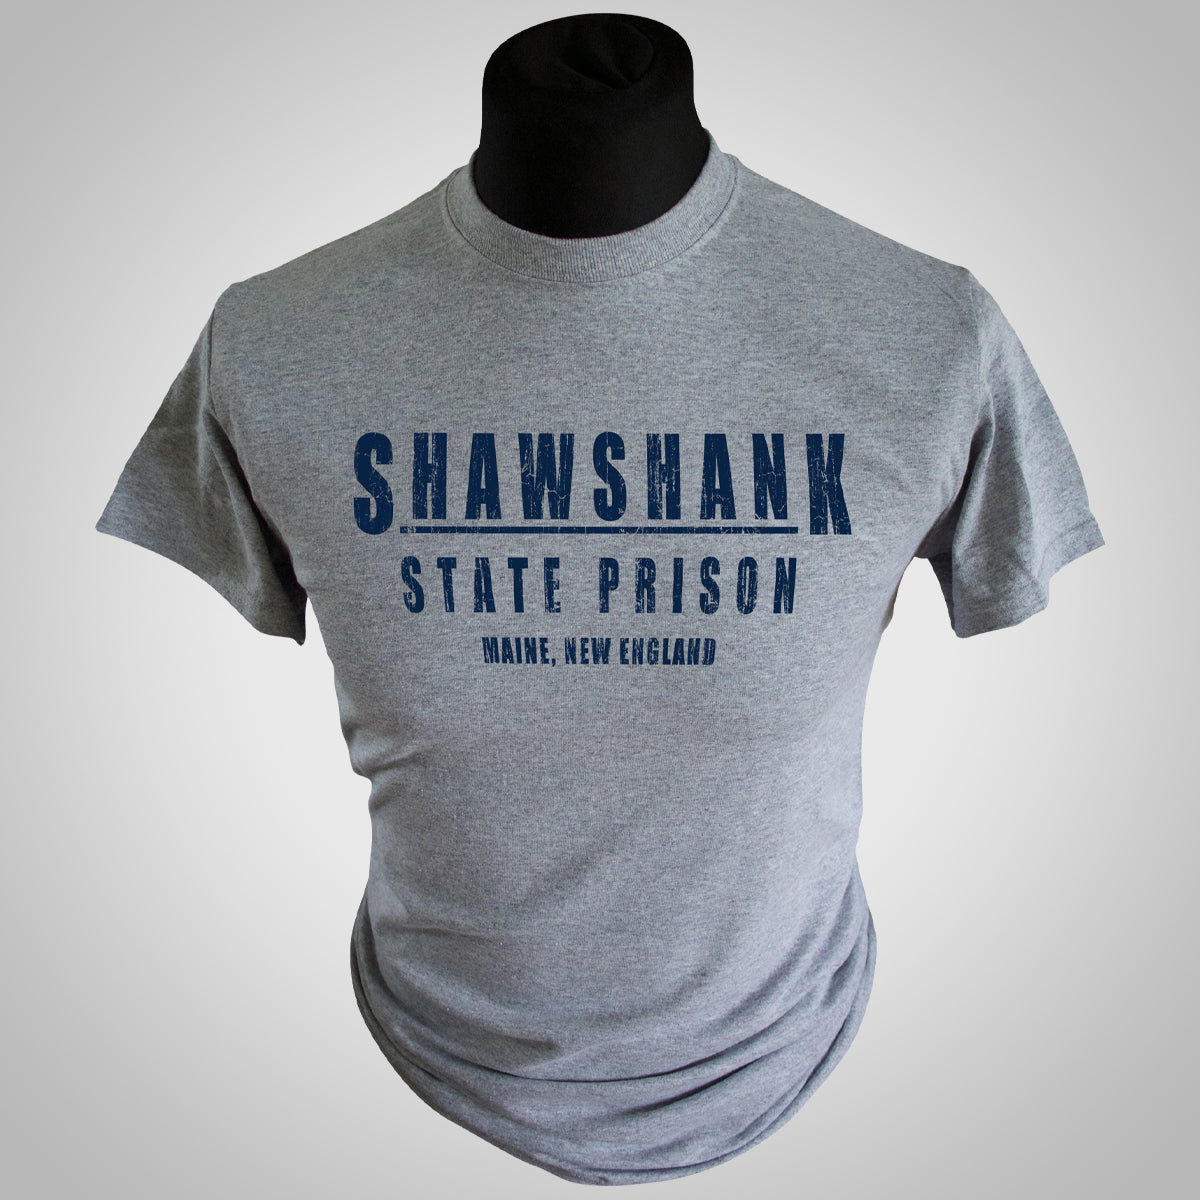 Shawshank State Prison T Shirt